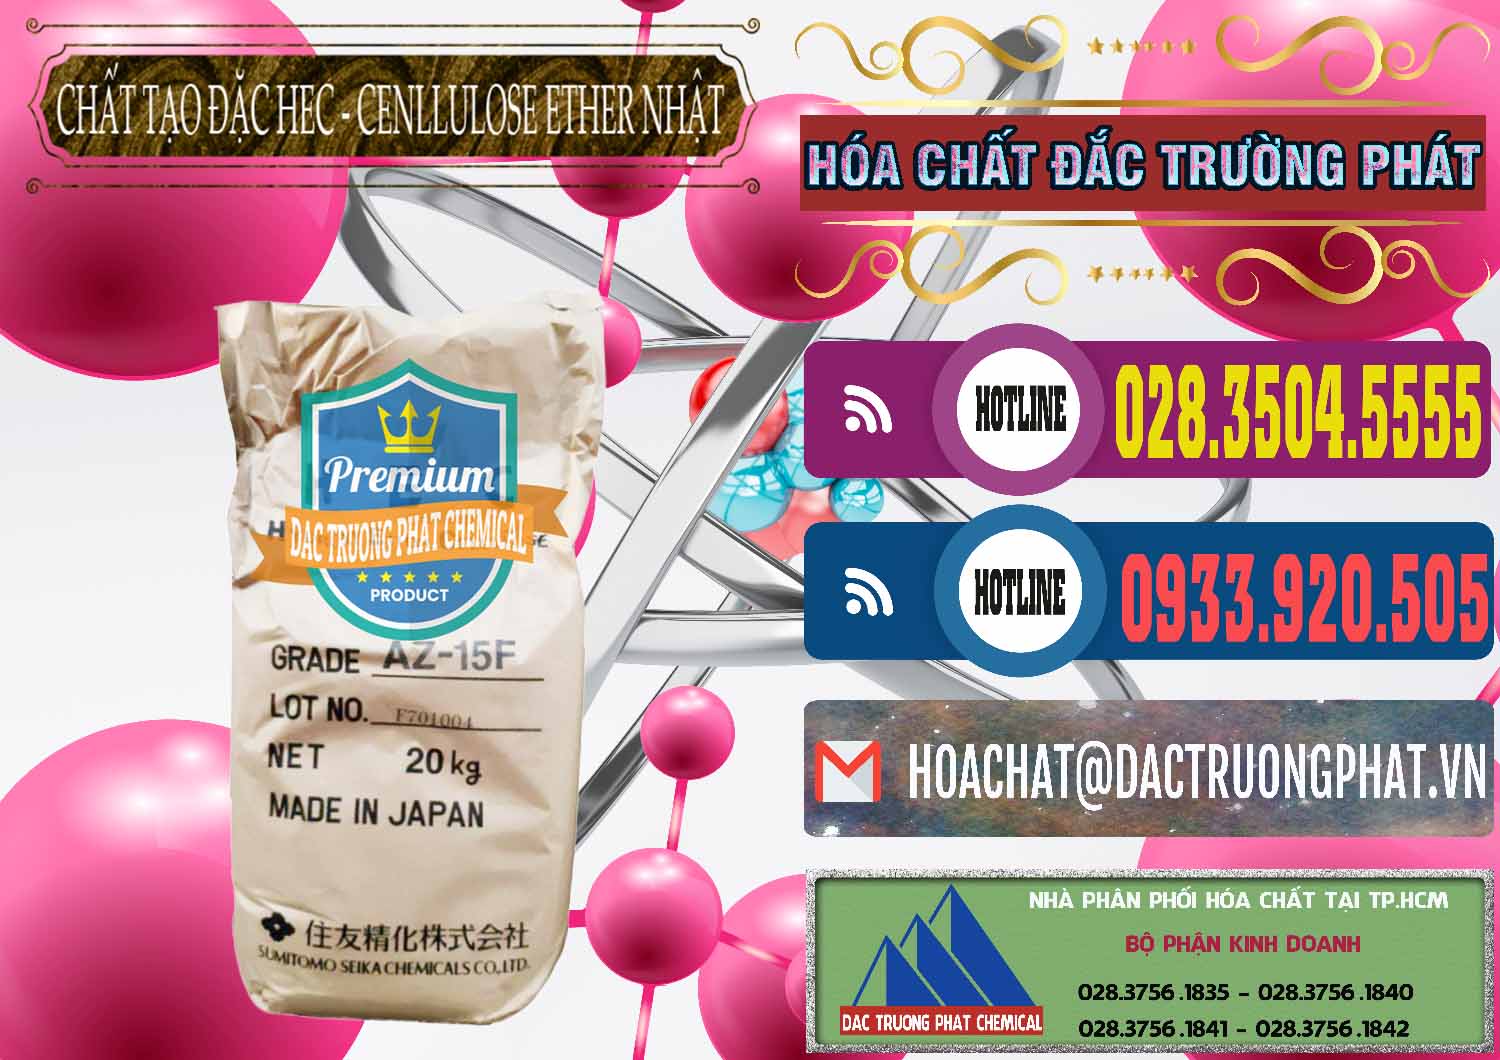 Công ty chuyên cung ứng - bán Chất Tạo Đặc Hec Mecellose – Cenllulose Ether Nhật Bản Japan - 0367 - Cty nhập khẩu và phân phối hóa chất tại TP.HCM - muabanhoachat.com.vn